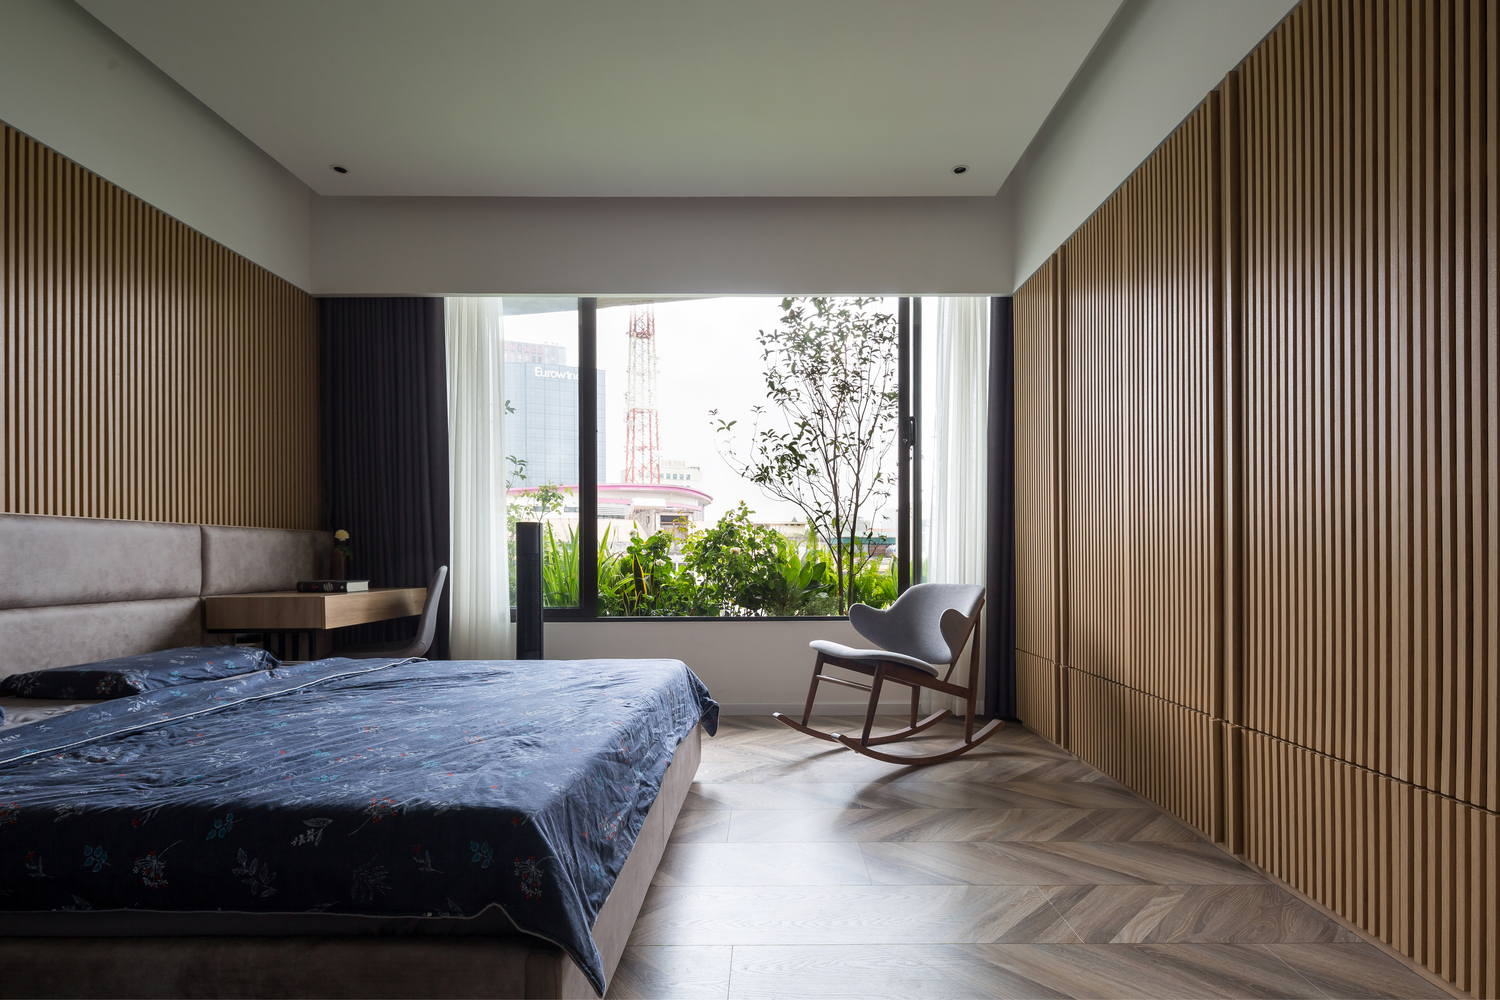 hình ảnh phòng ngủ với giường lớn, tường đầu giường ốp gỗ, ghế thư giãn ở góc phòng, cửa sổ kính lớn